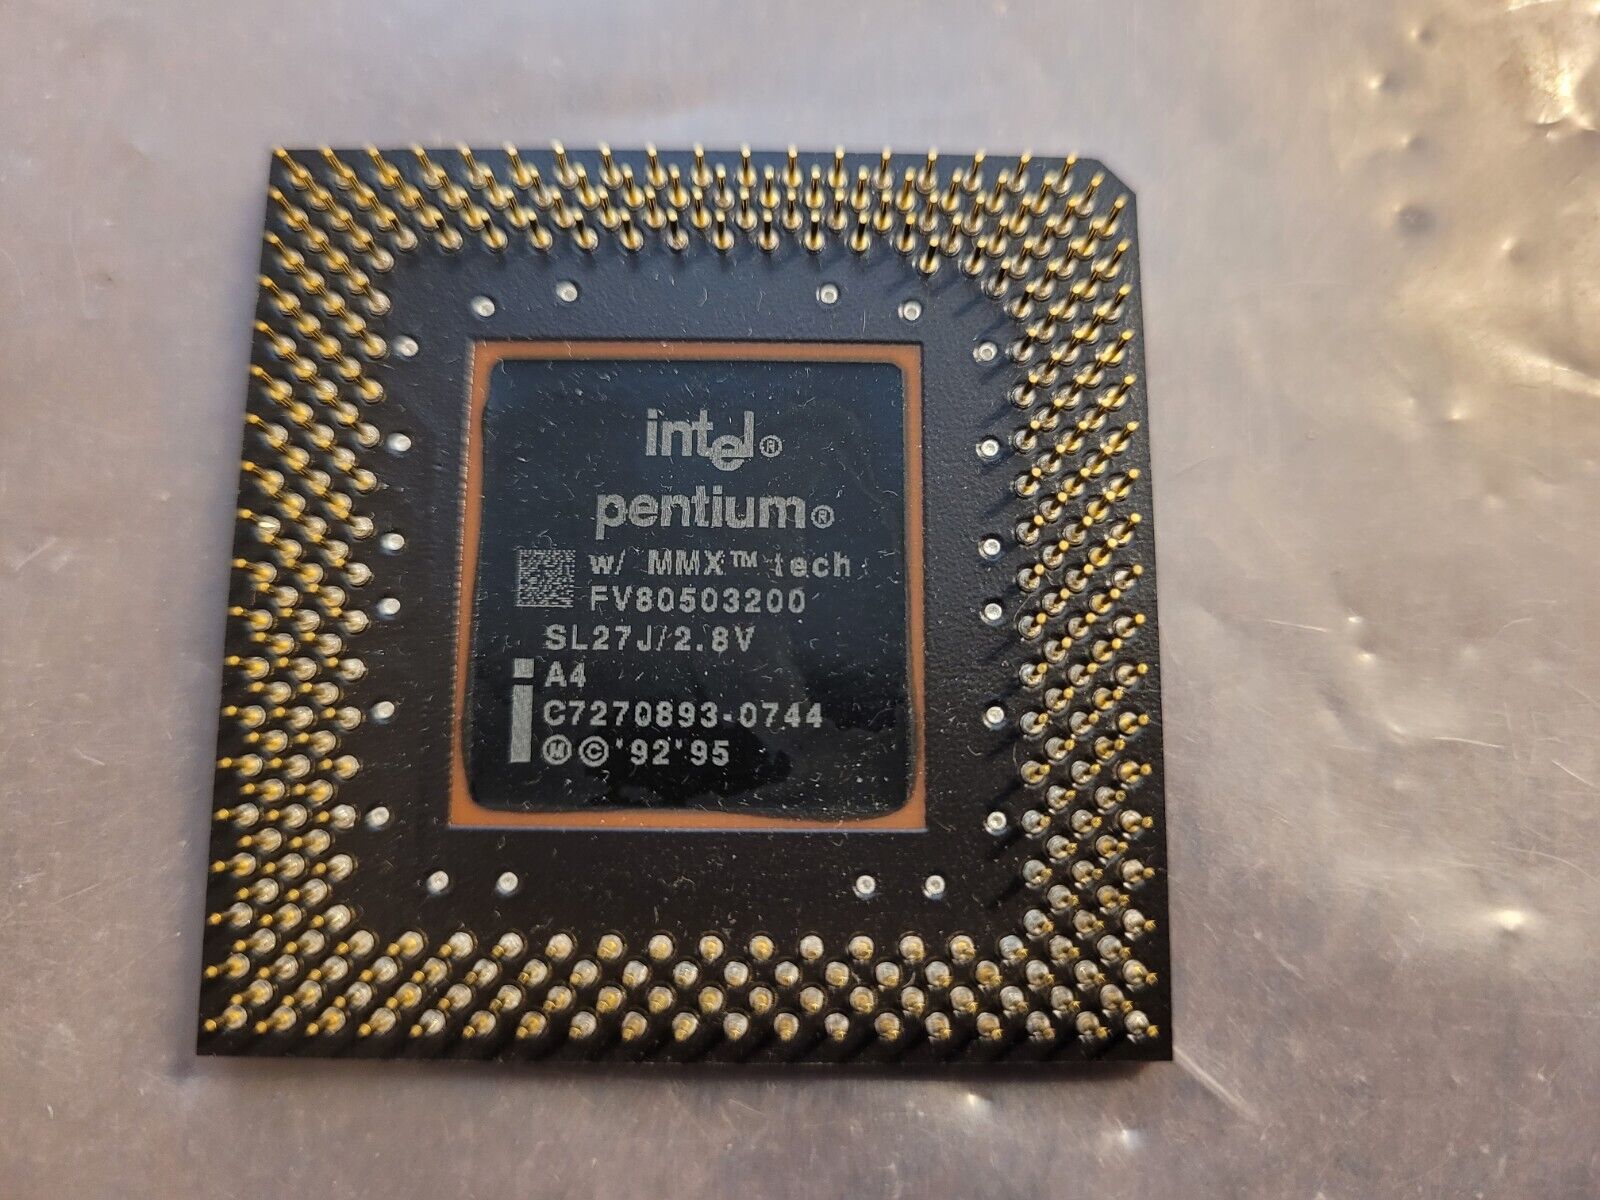 Intel Pentium MMX 2.8v 200MHz CPU Processor SL27J 92 95 FV80503200 Vintage